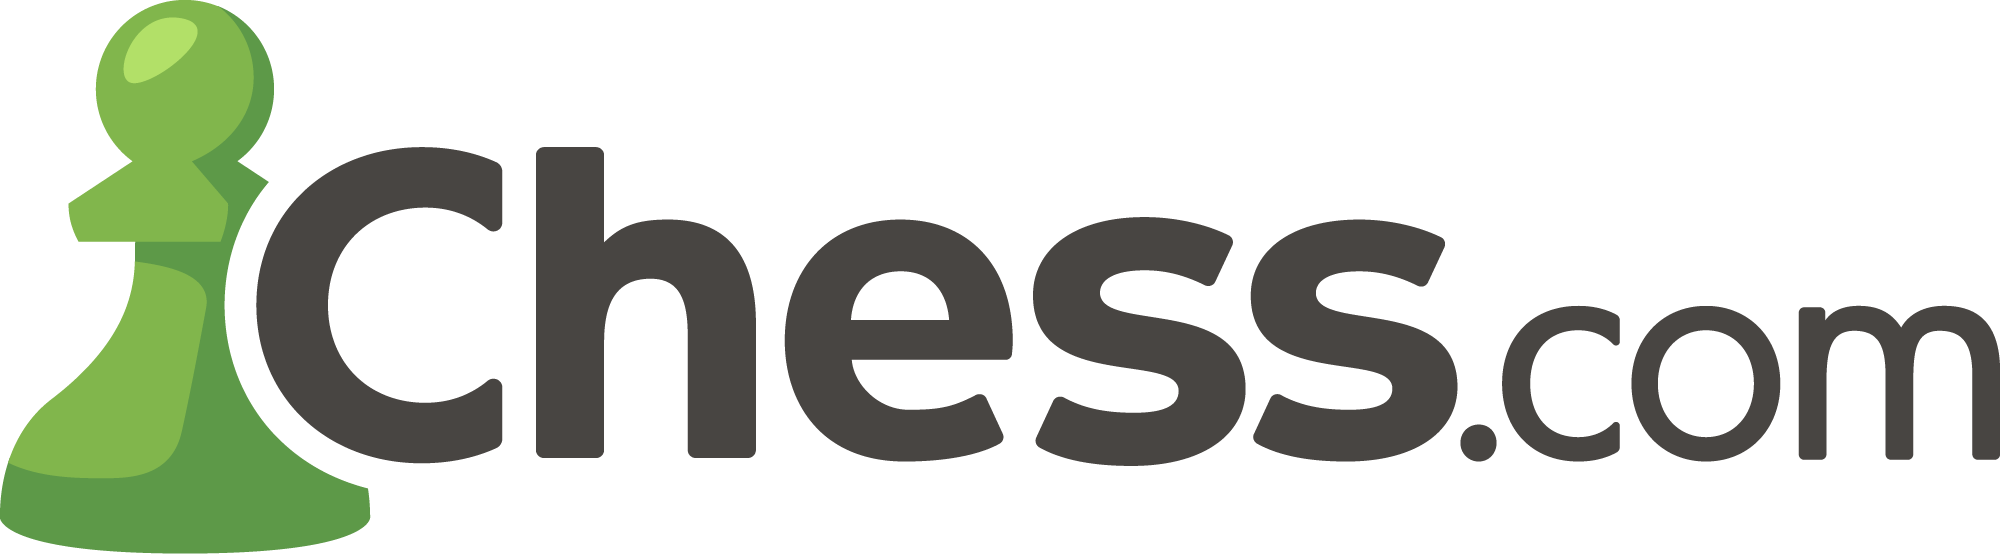 Chess.com логотип. Шахматы Chess.com. Логотип Чесс ком. Чесском логотип.